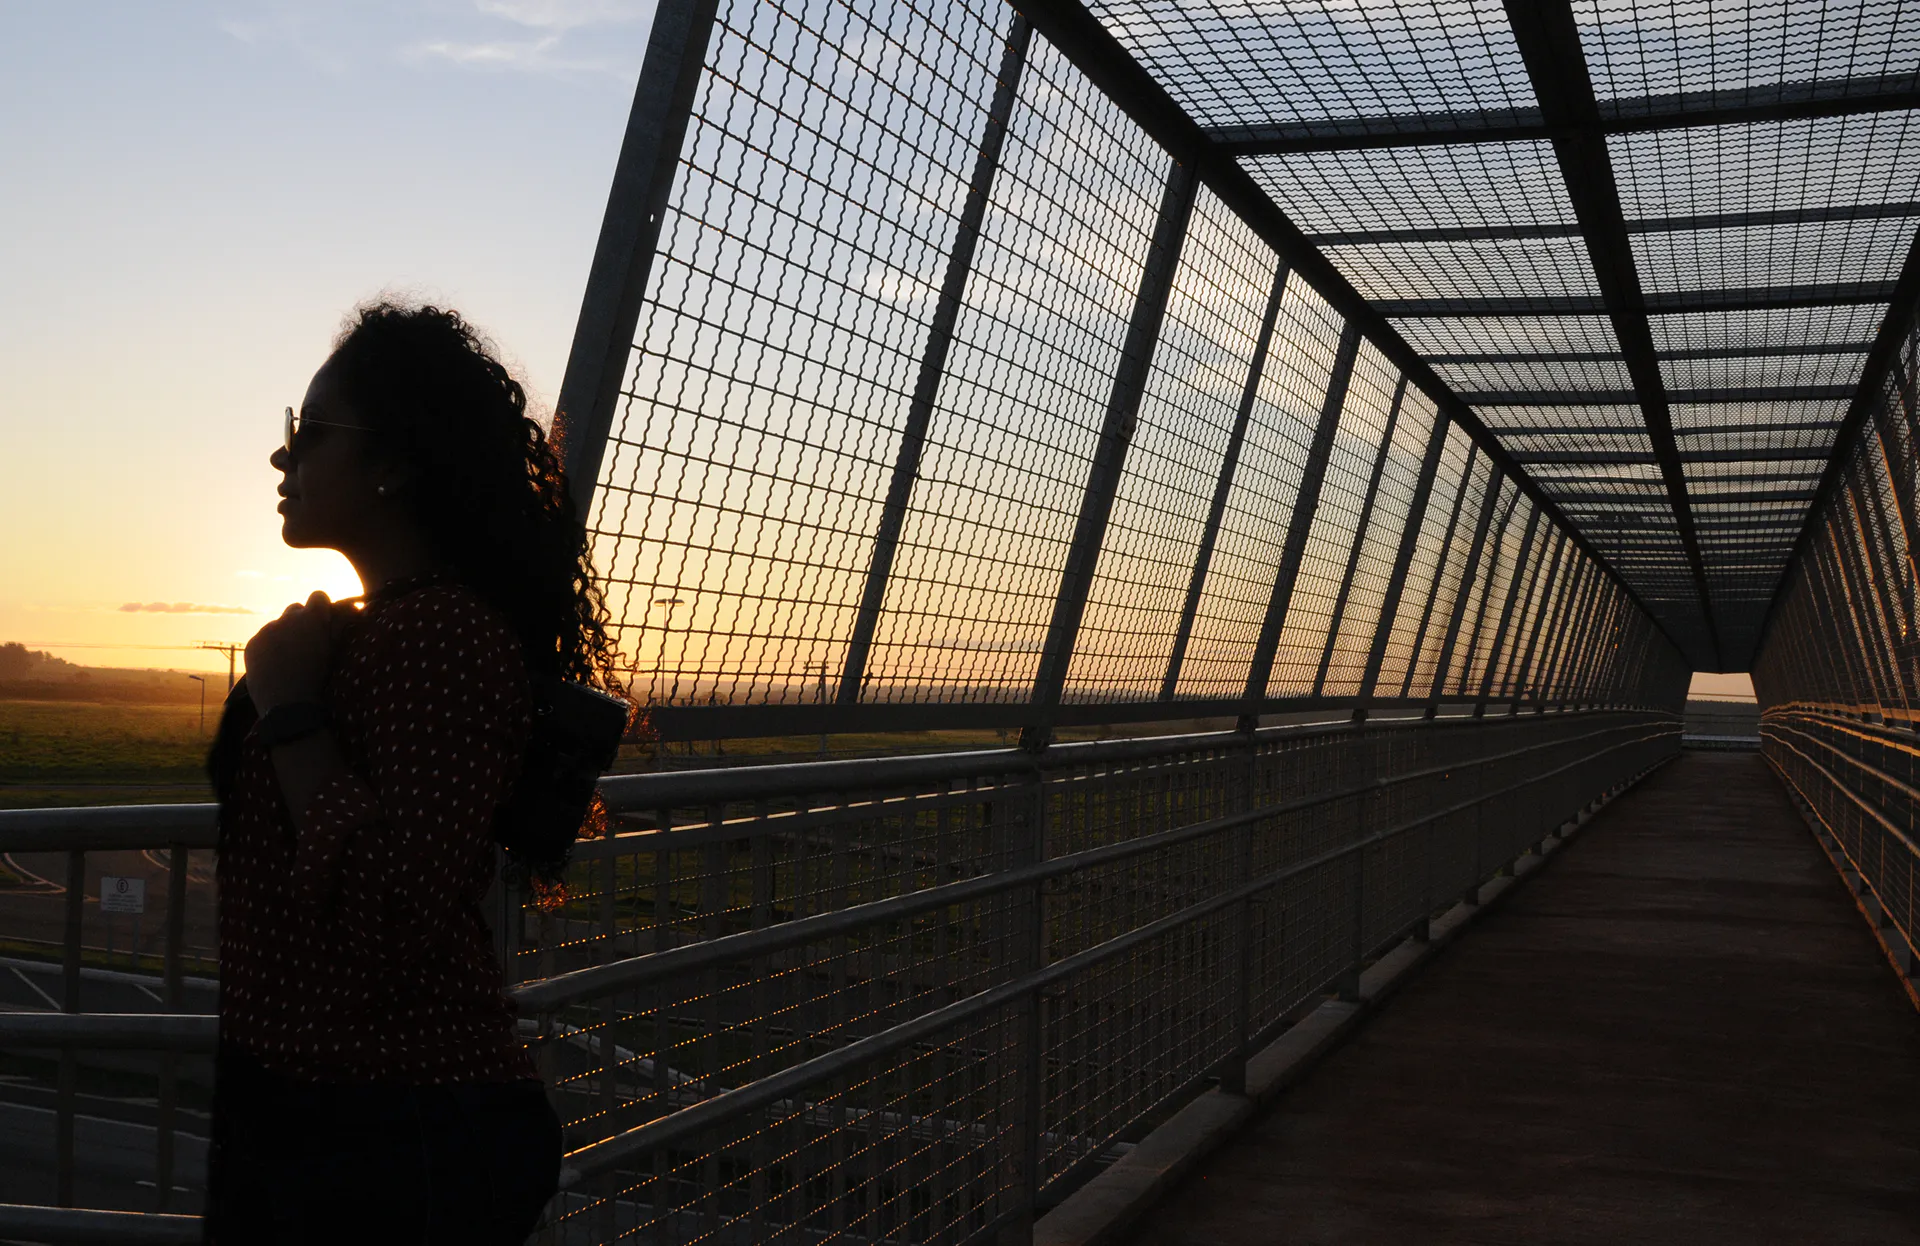 Mulher observando o horizonte com uma passarela de pedestres ao fundo